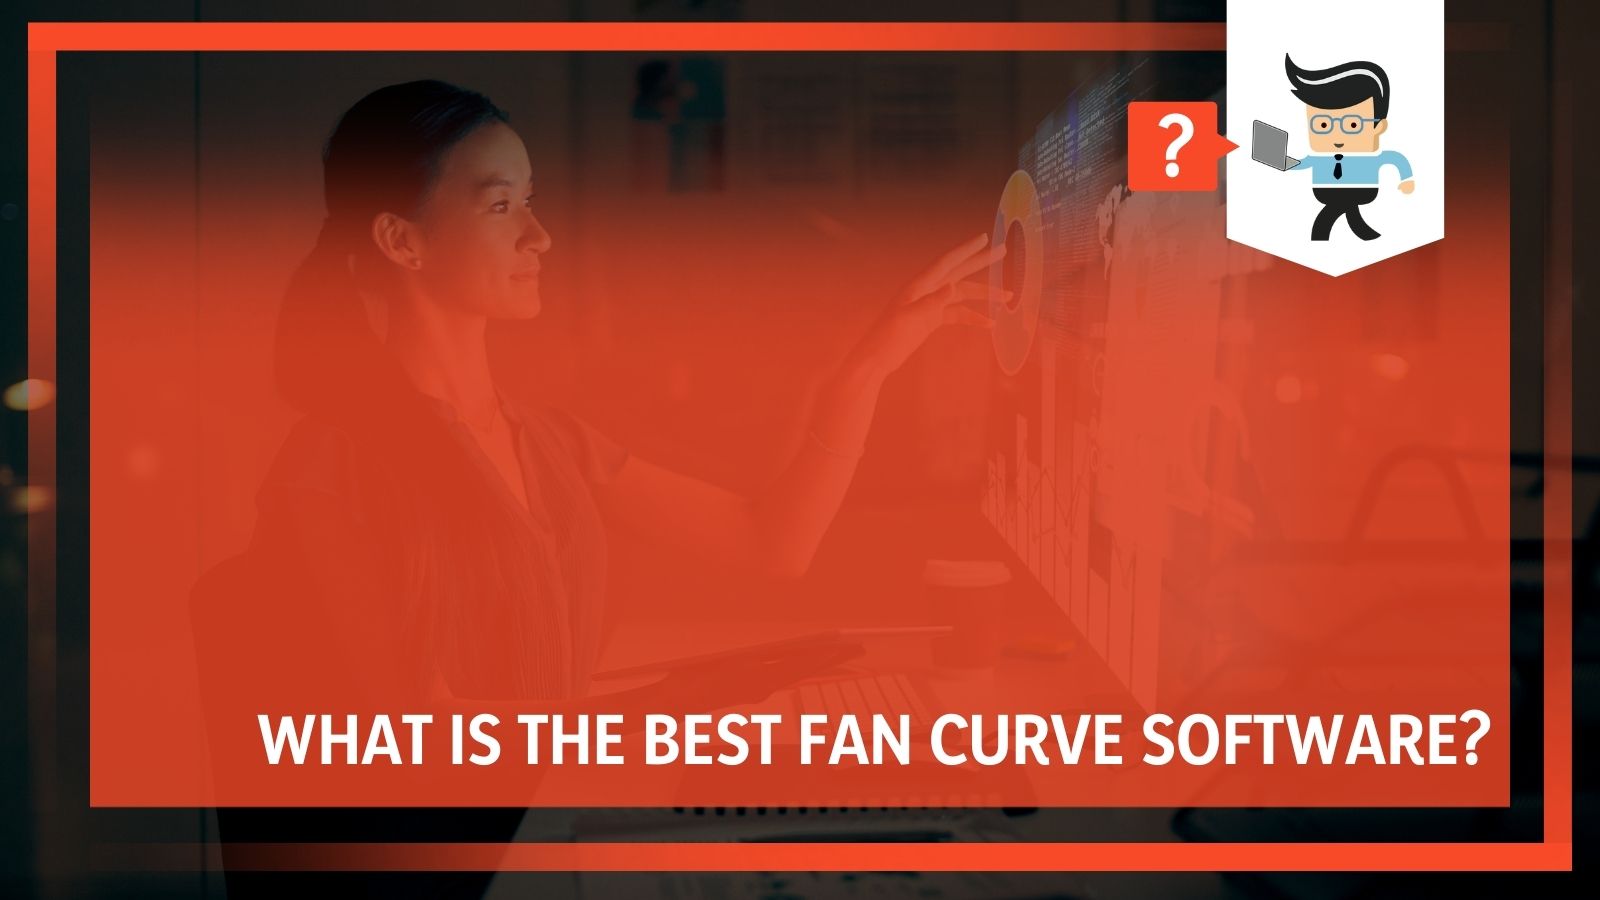 Fan Curve Software